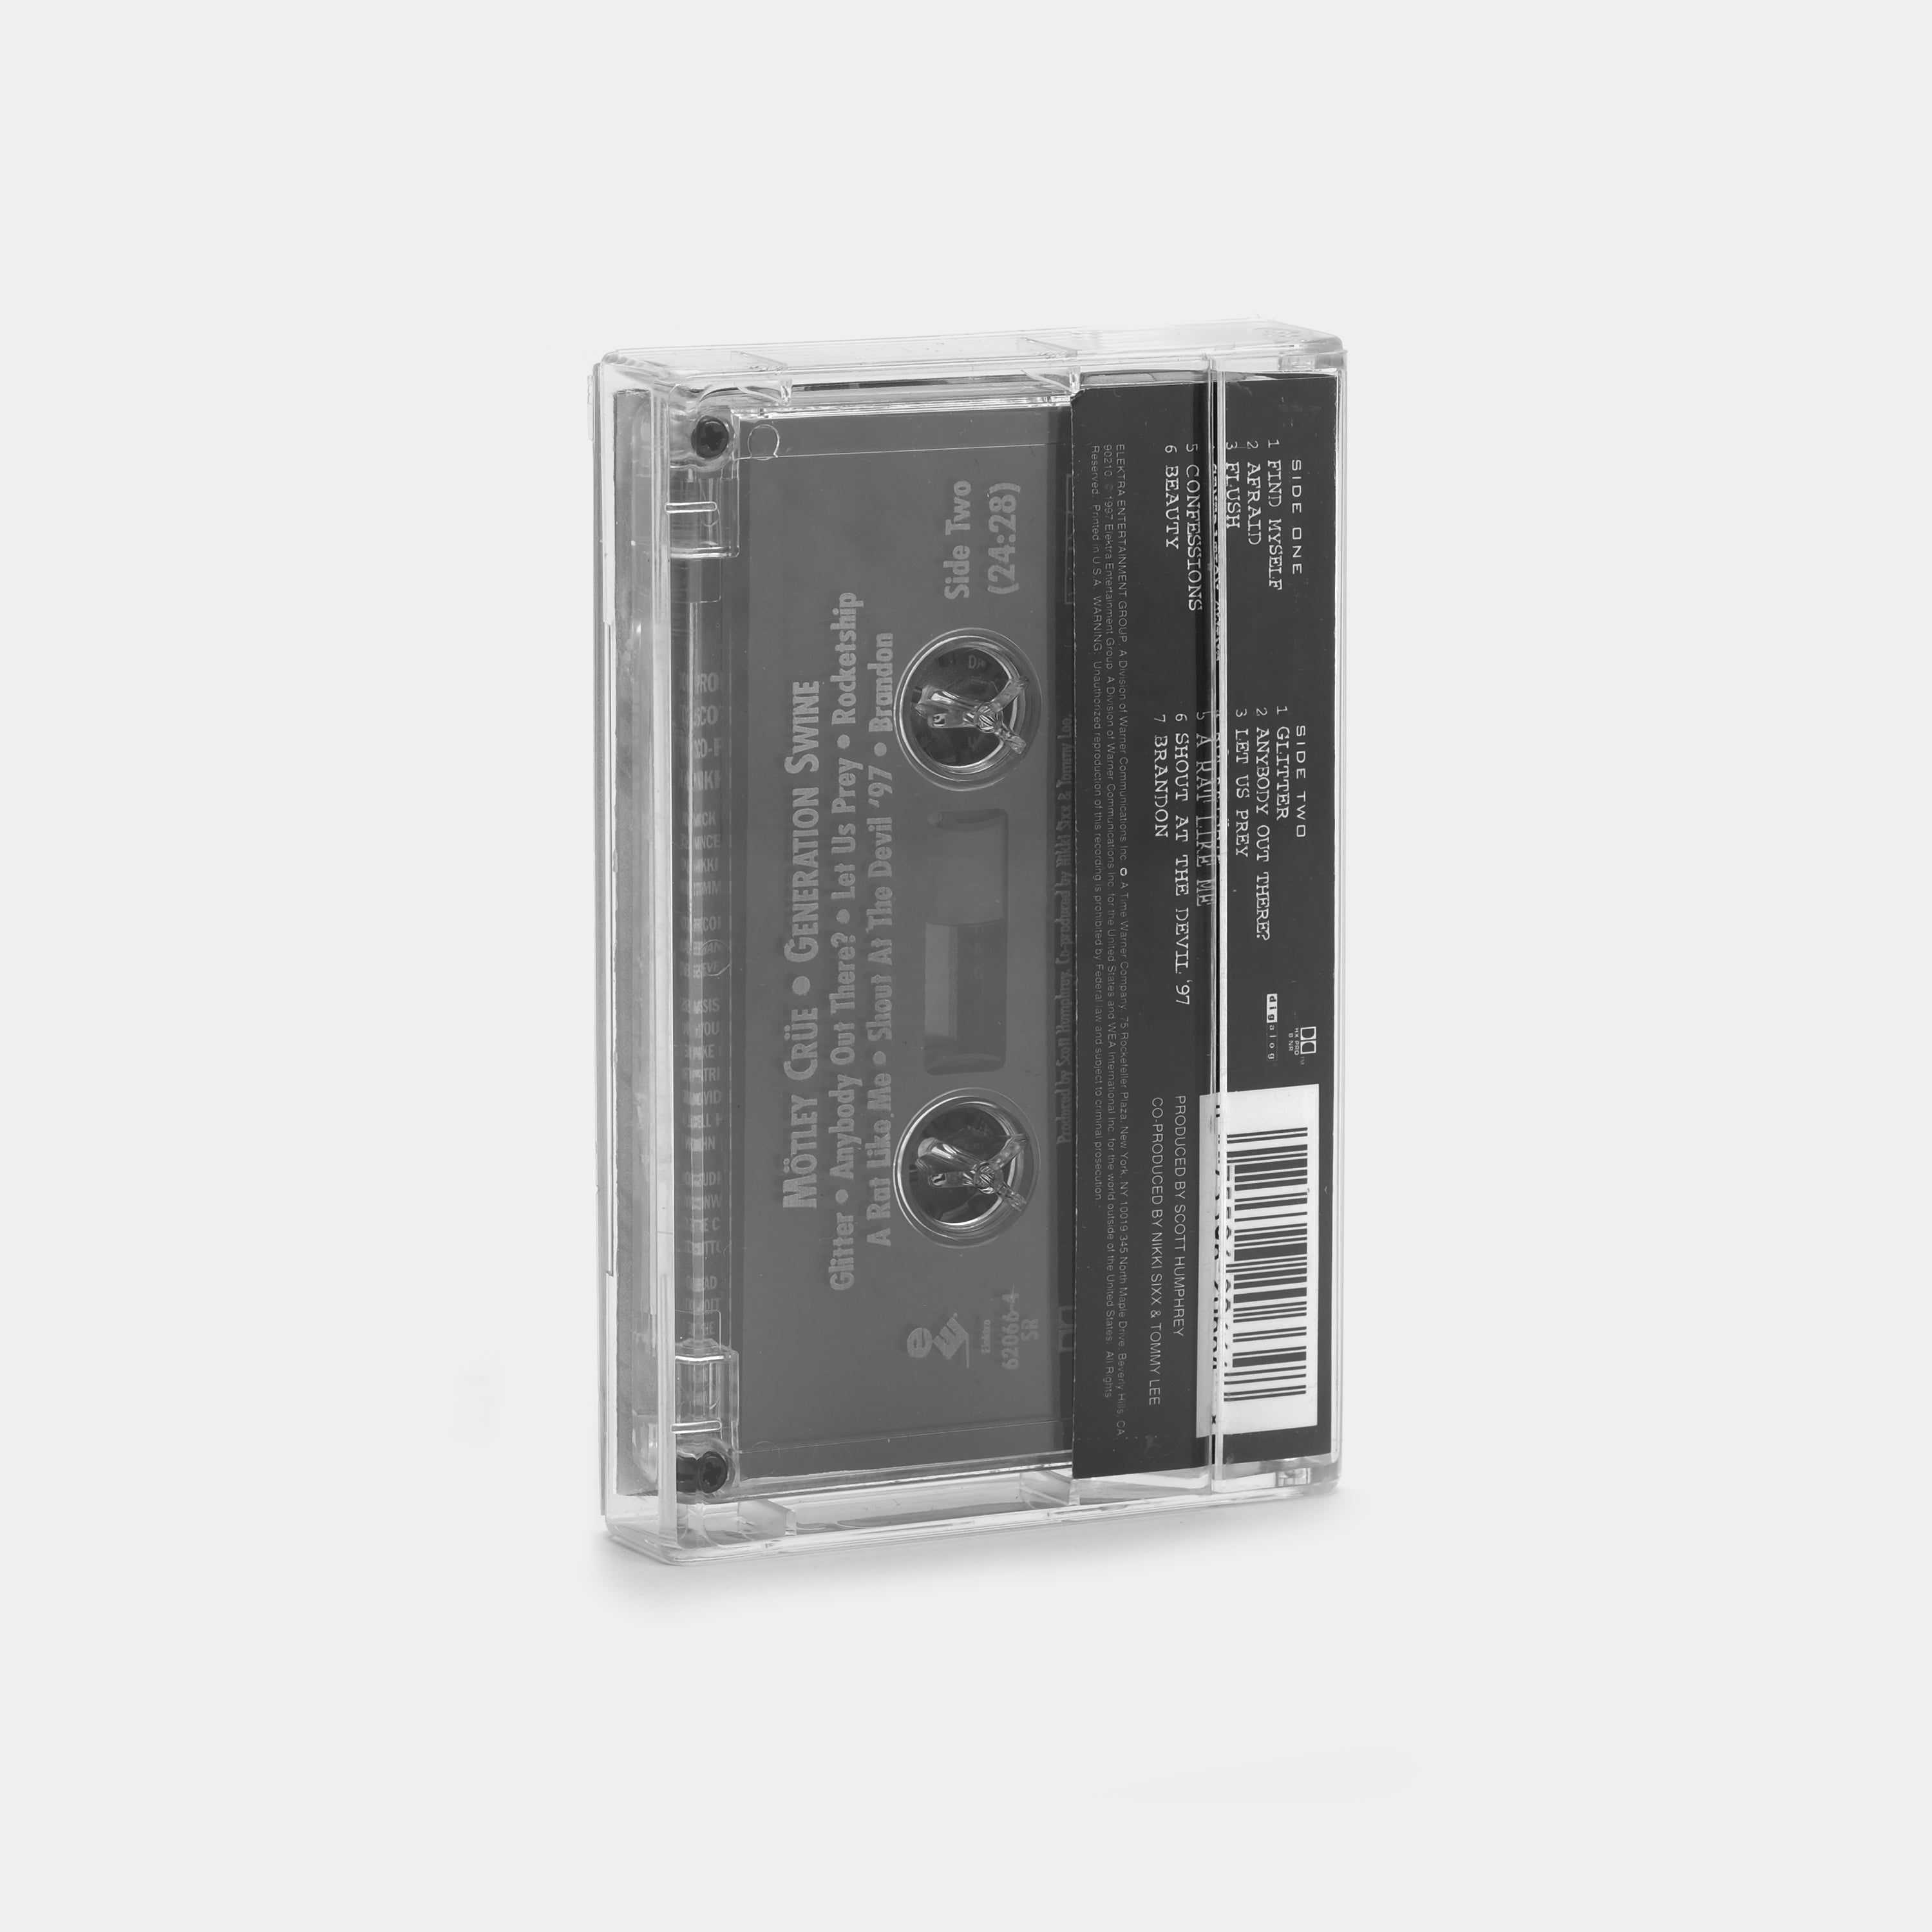 Mötley Crüe - Generation Swine Cassette Tape